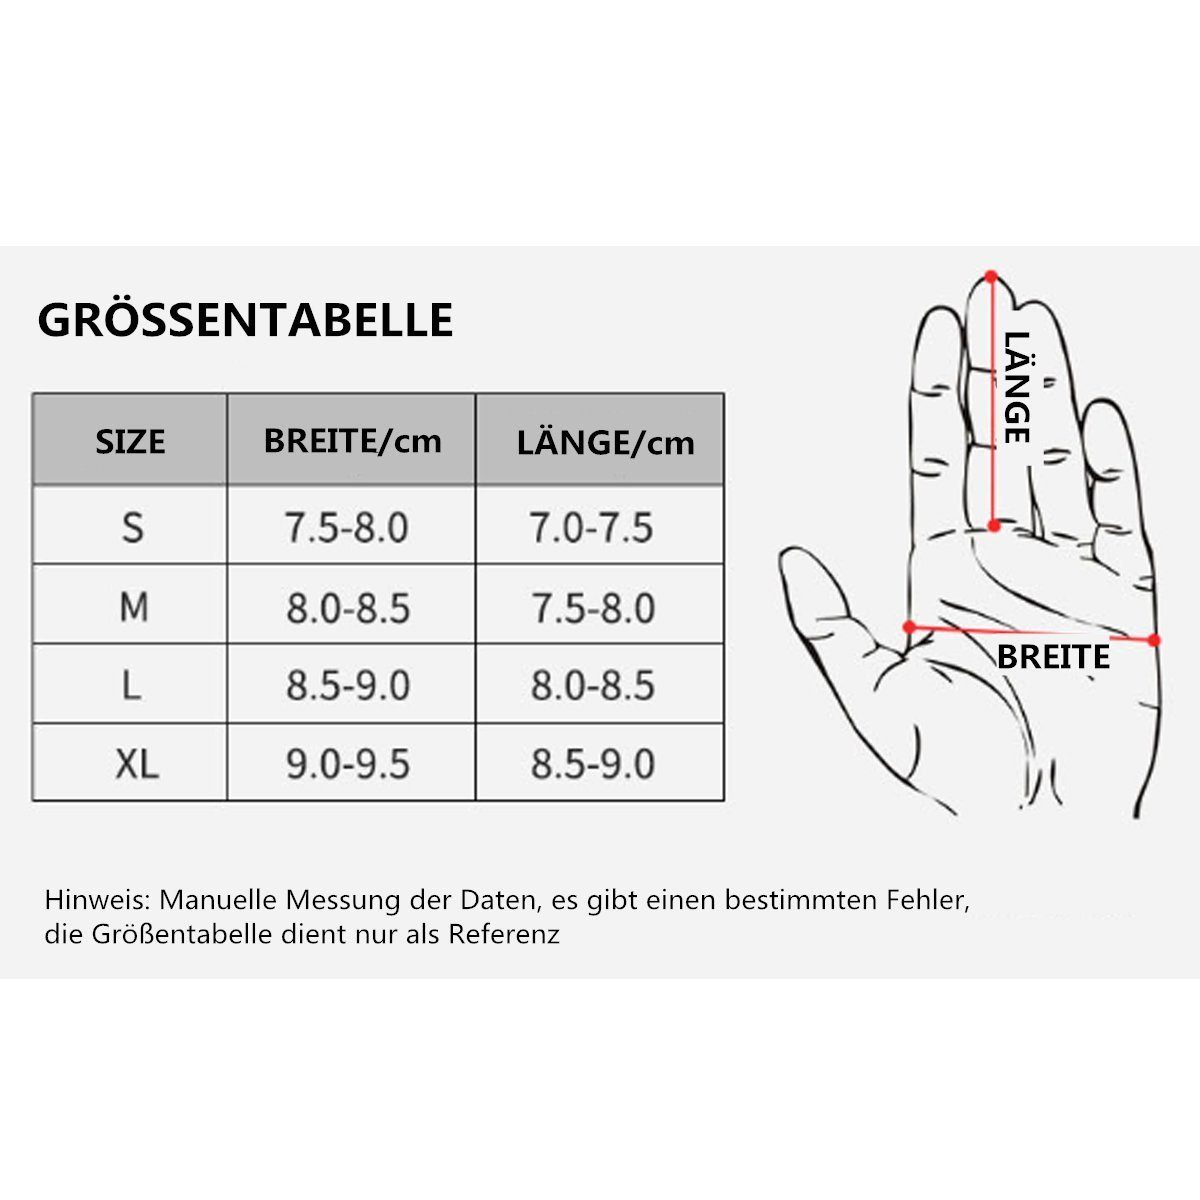 MAEREX Touchscreen Anti-Rutsch Winter Handschuhe -40℃ bis Wasserdicht Skihandschuhe Grau(L)